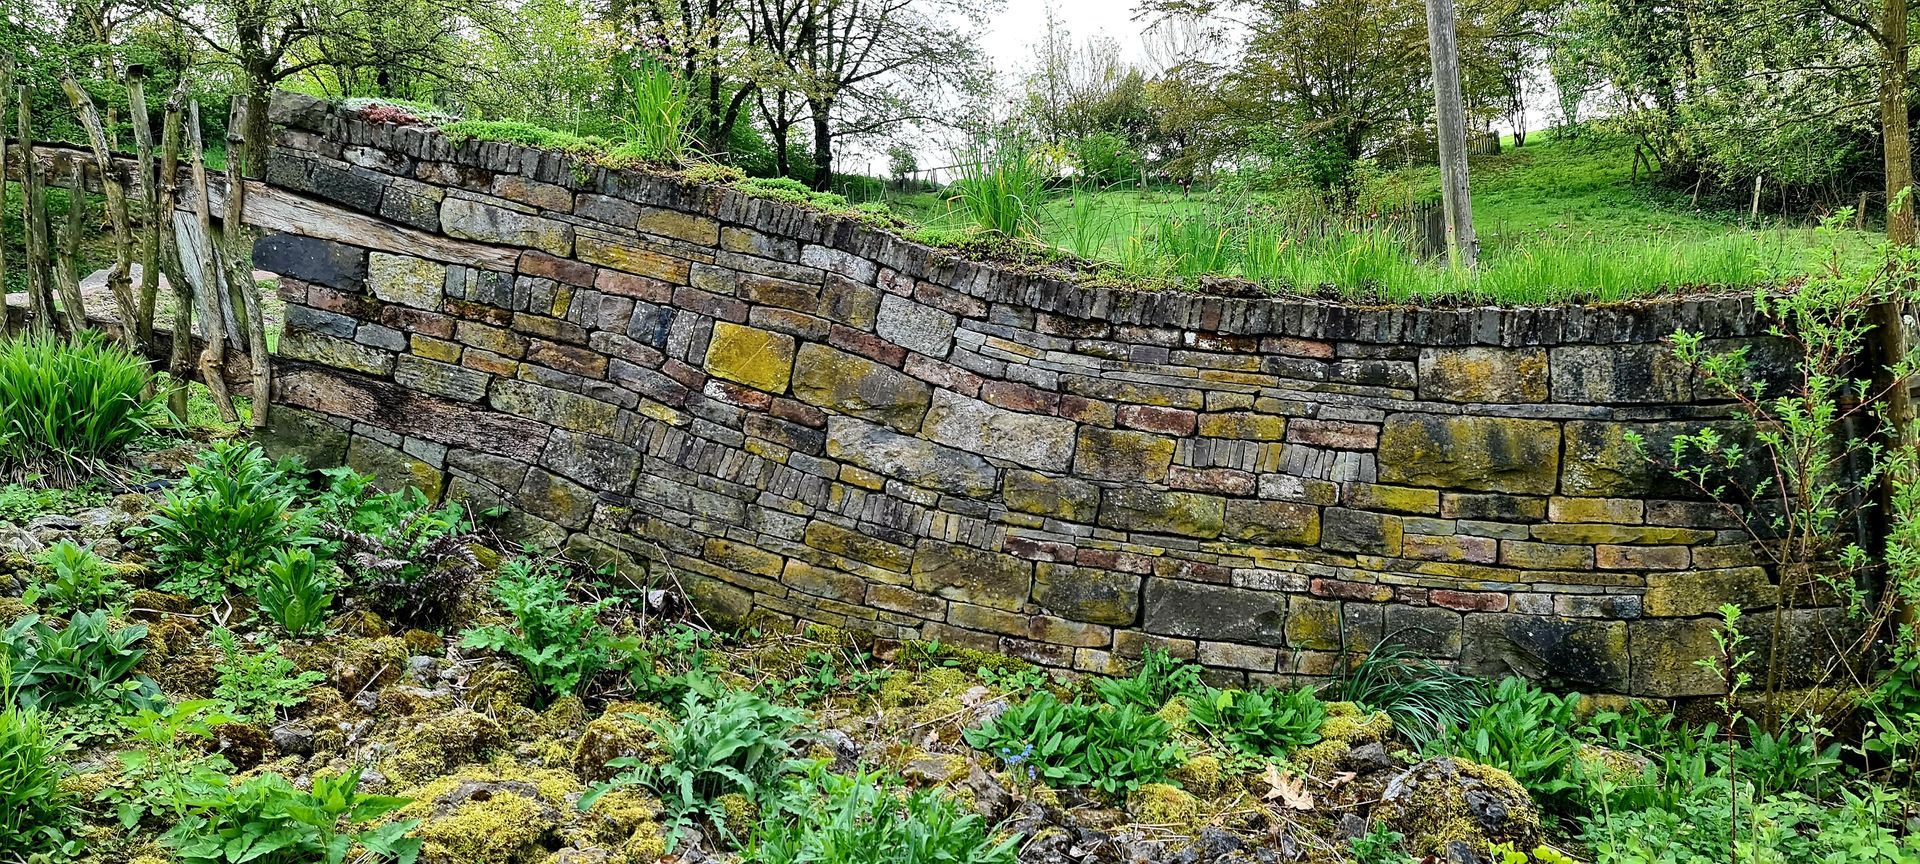 küstlerisch gestaltete Natursteinmauer